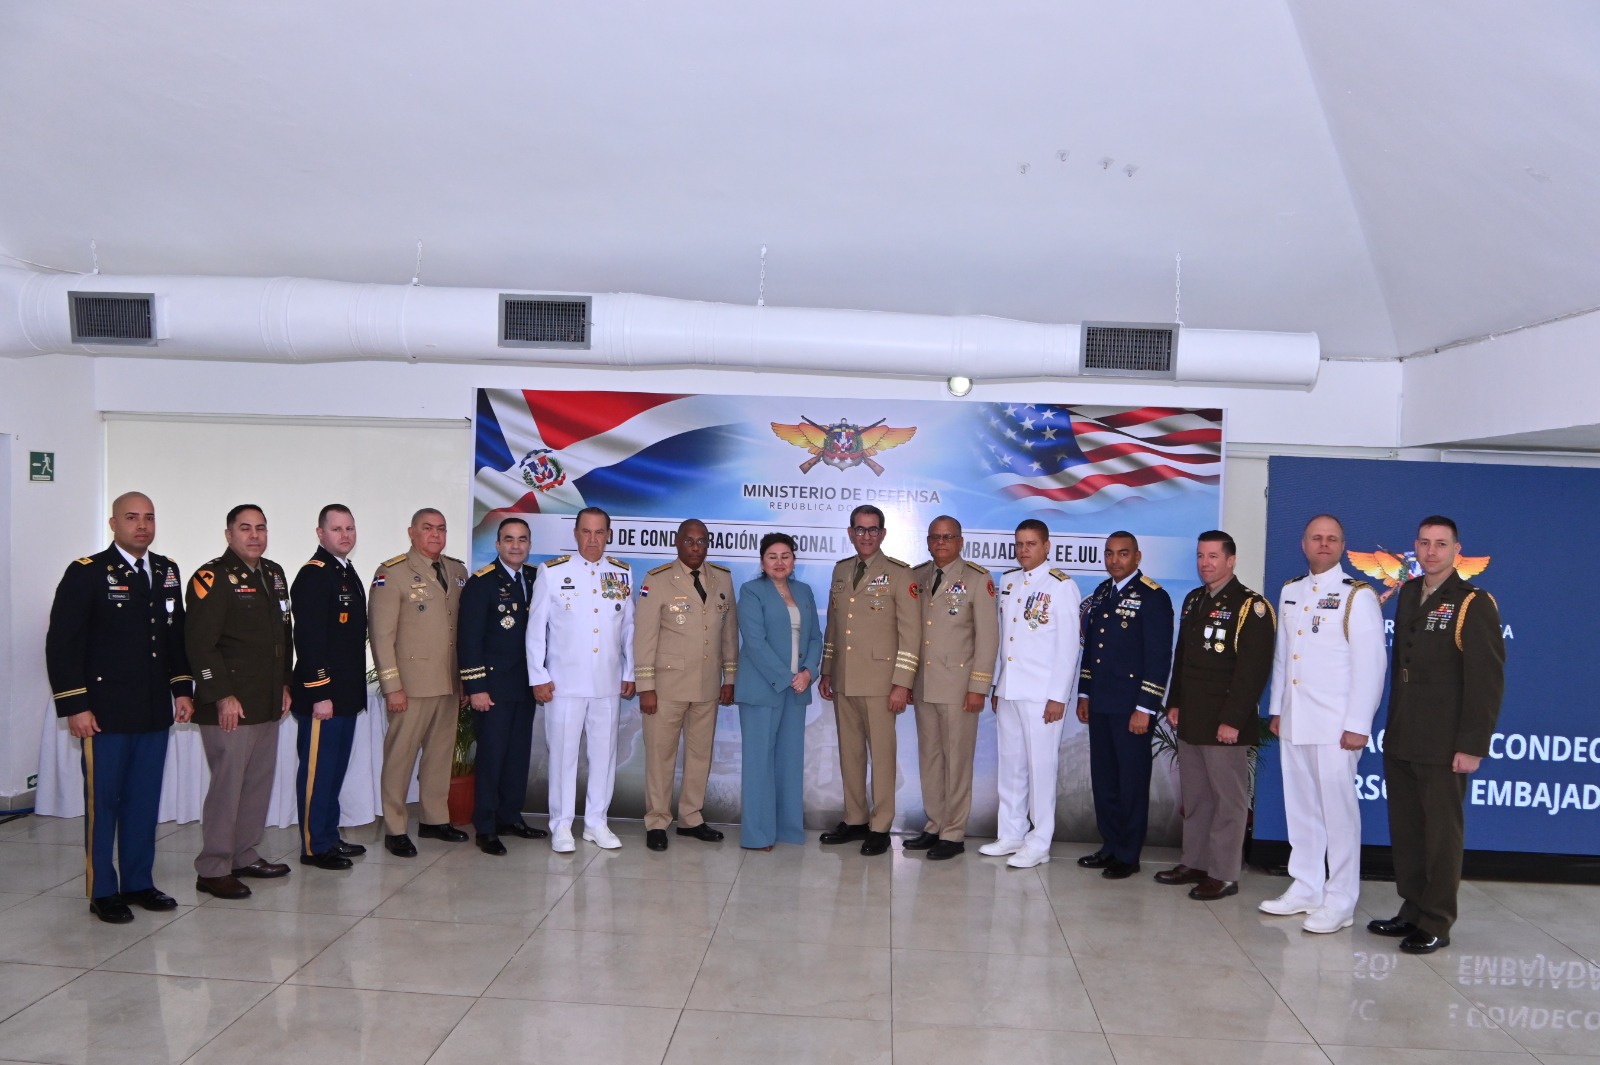 Ministro de Defensa Díaz Morfa condecora a militares Jefes de misiones Embajada EEUU en RD 11